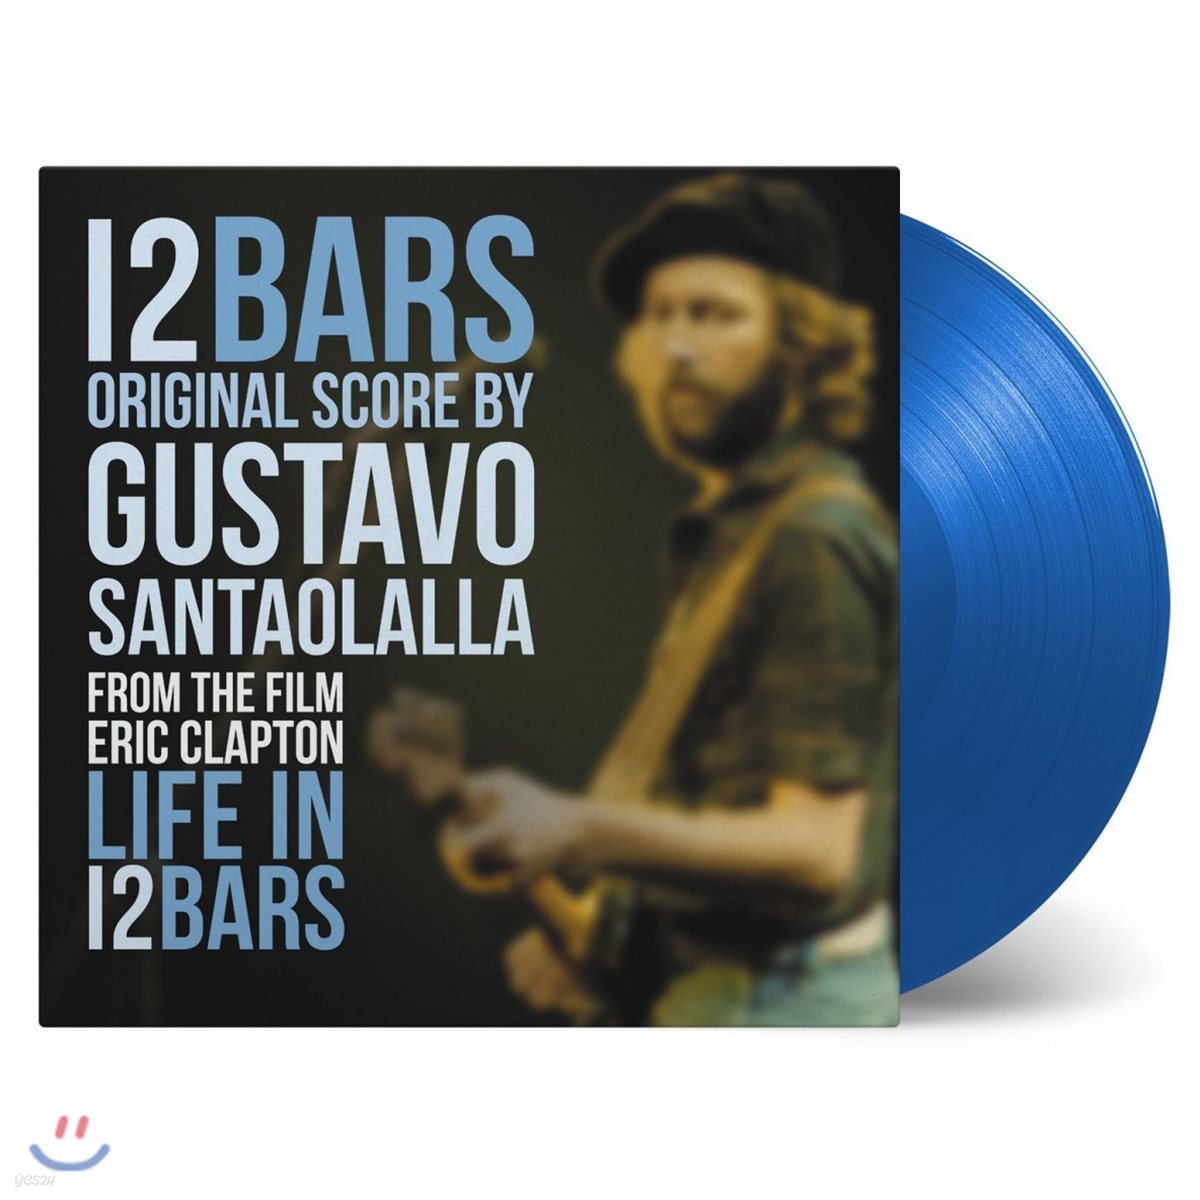 라이프 인 12 바스 다큐멘터리 음악 (Life in 12 Bars OST by Gustavo Santaolalla) [투명 블루 컬러 LP]